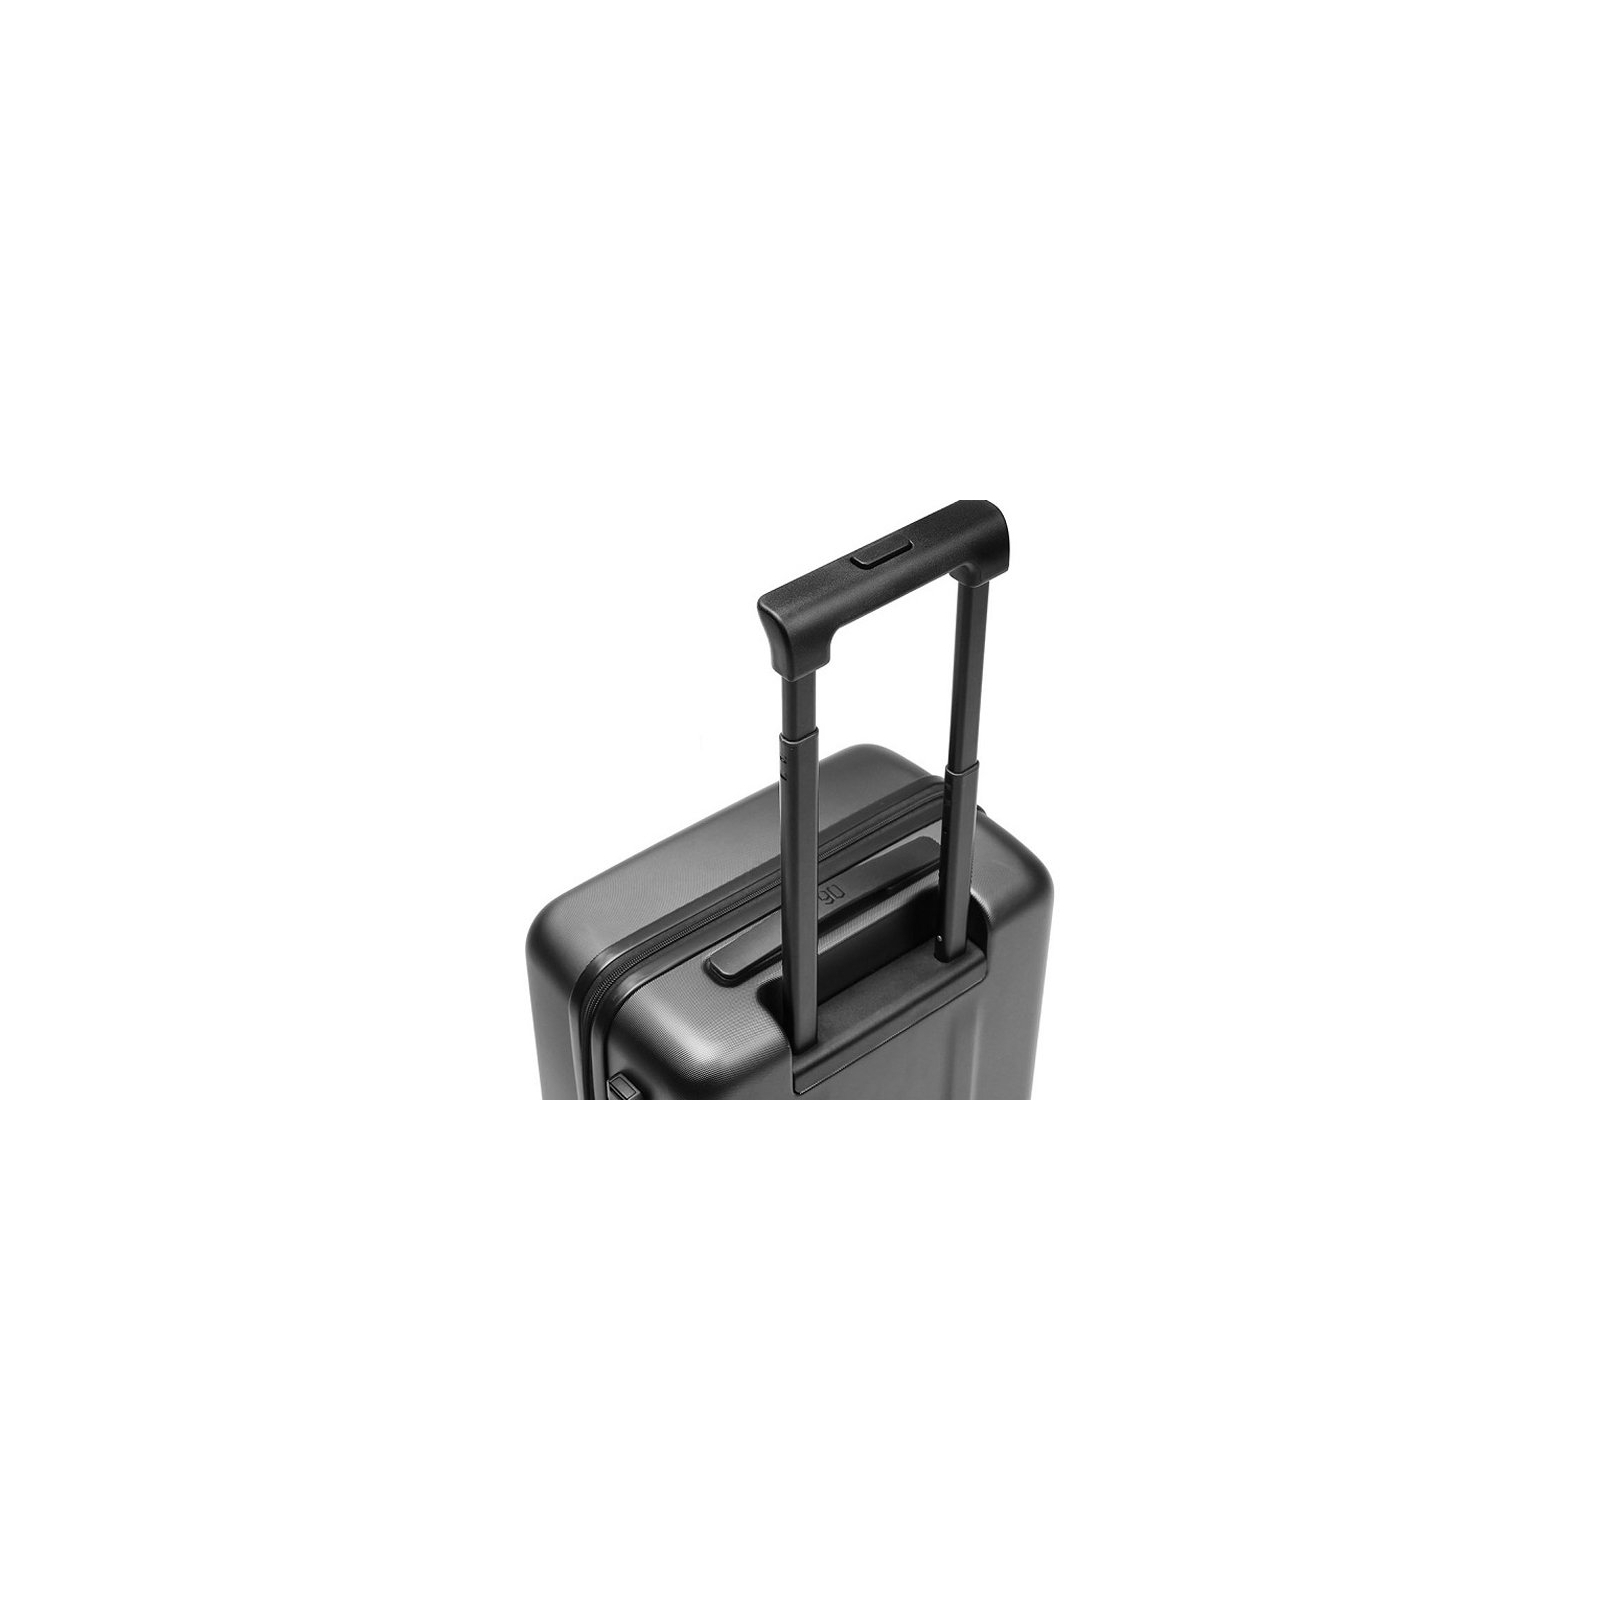 Чемодан Xiaomi Ninetygo PC Luggage 24'' Black (6970055340113) изображение 3